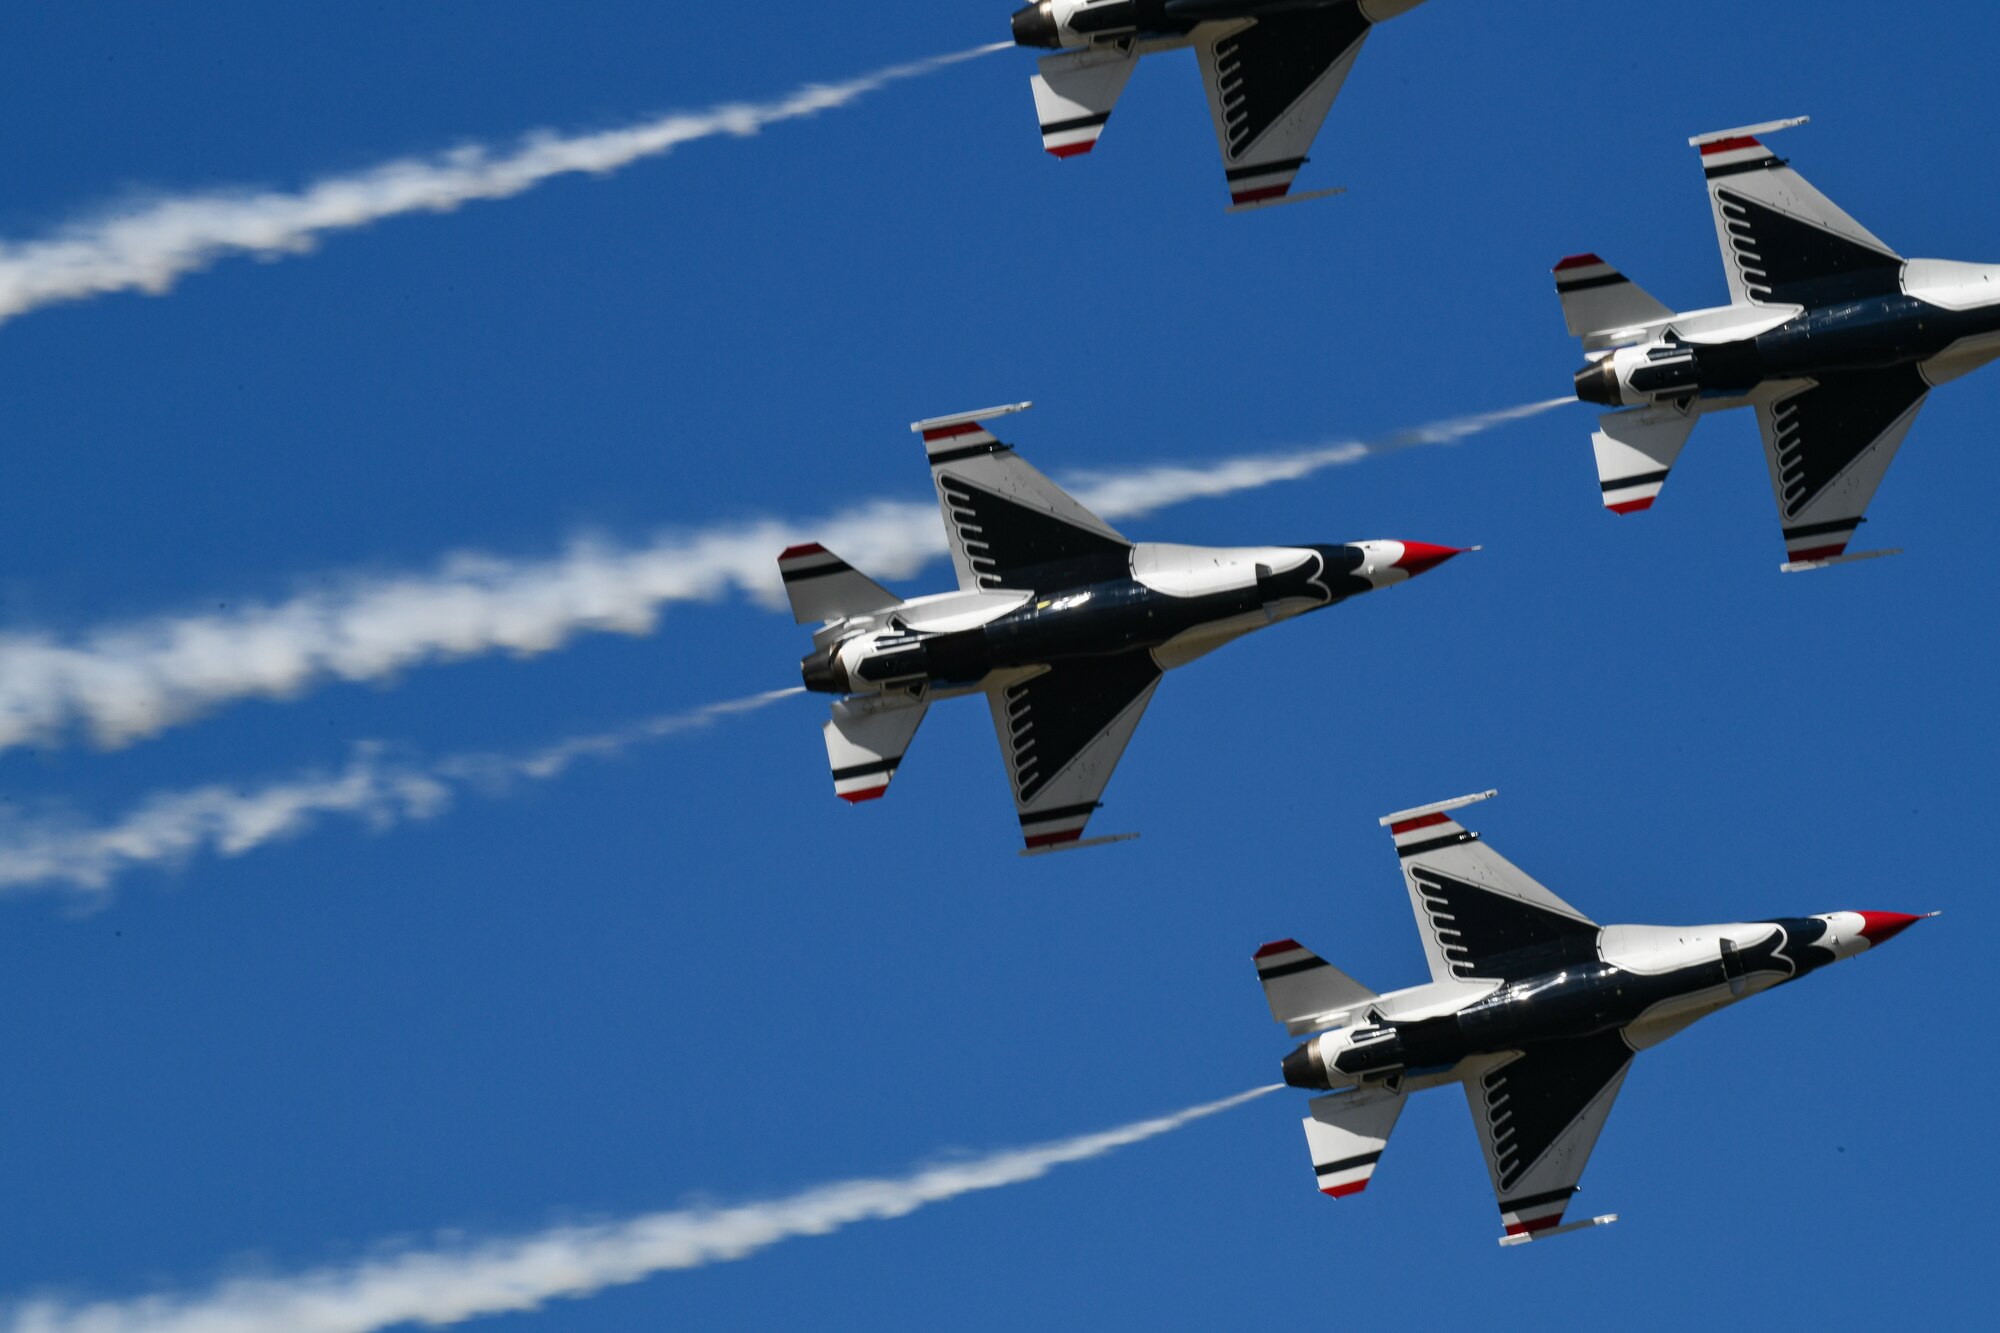 Four Thunderbirds F-16's in flight formation